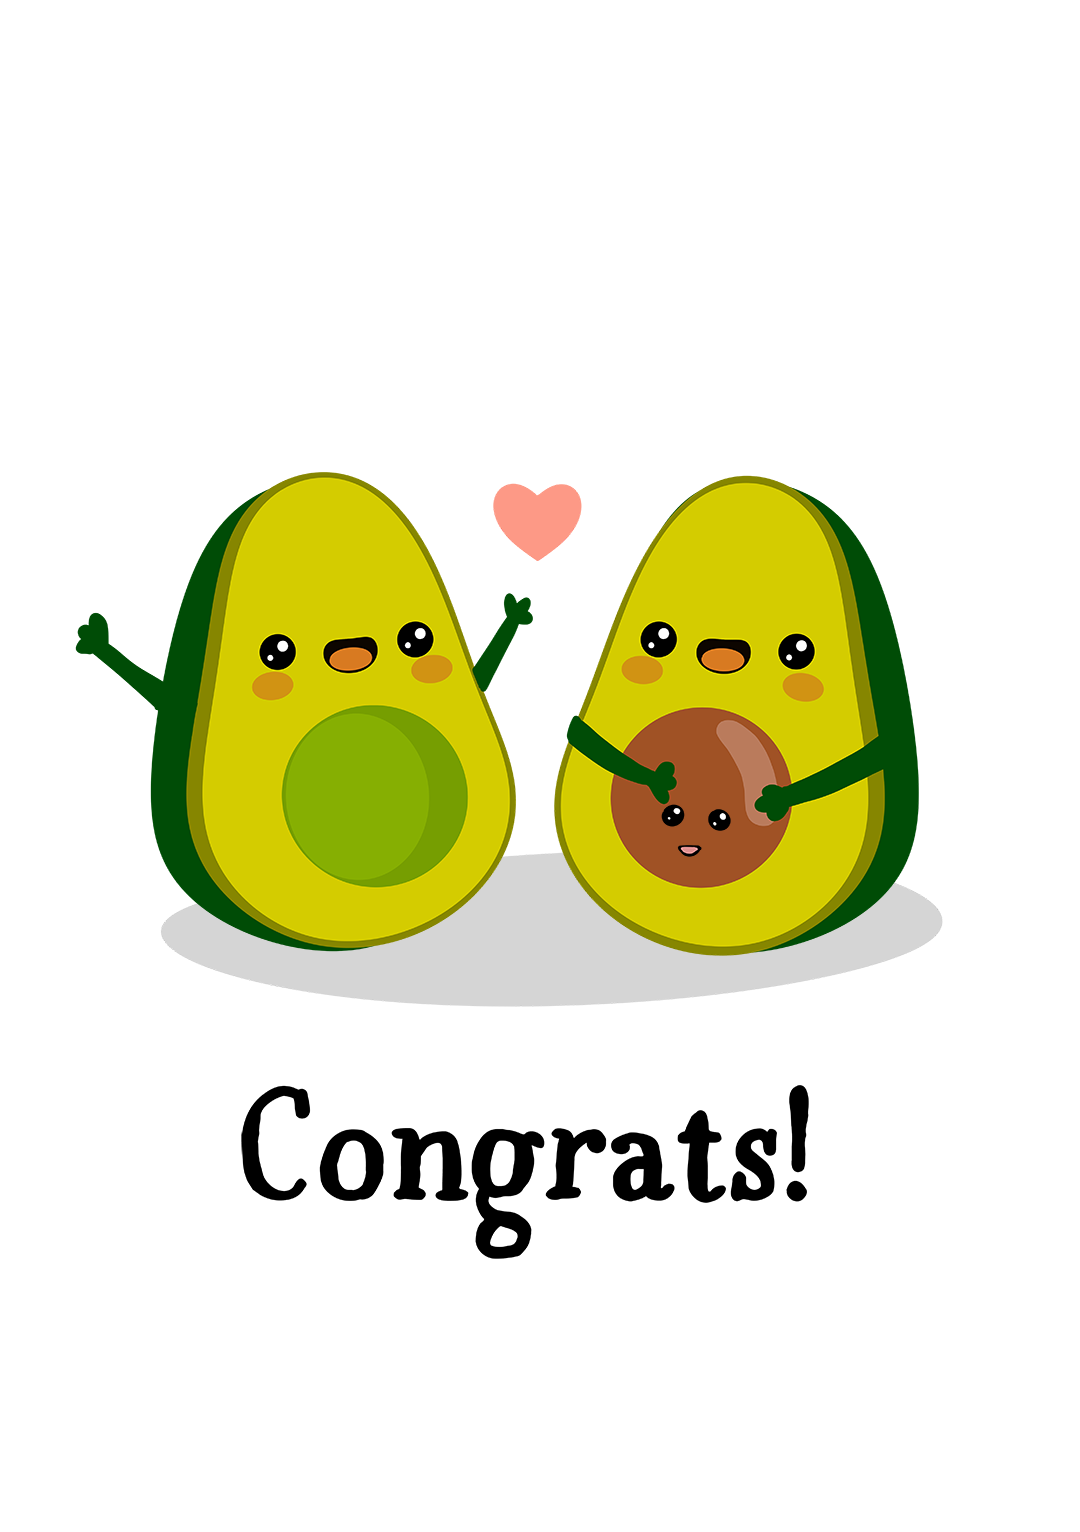 Congrats Pregnancy Avocado Card